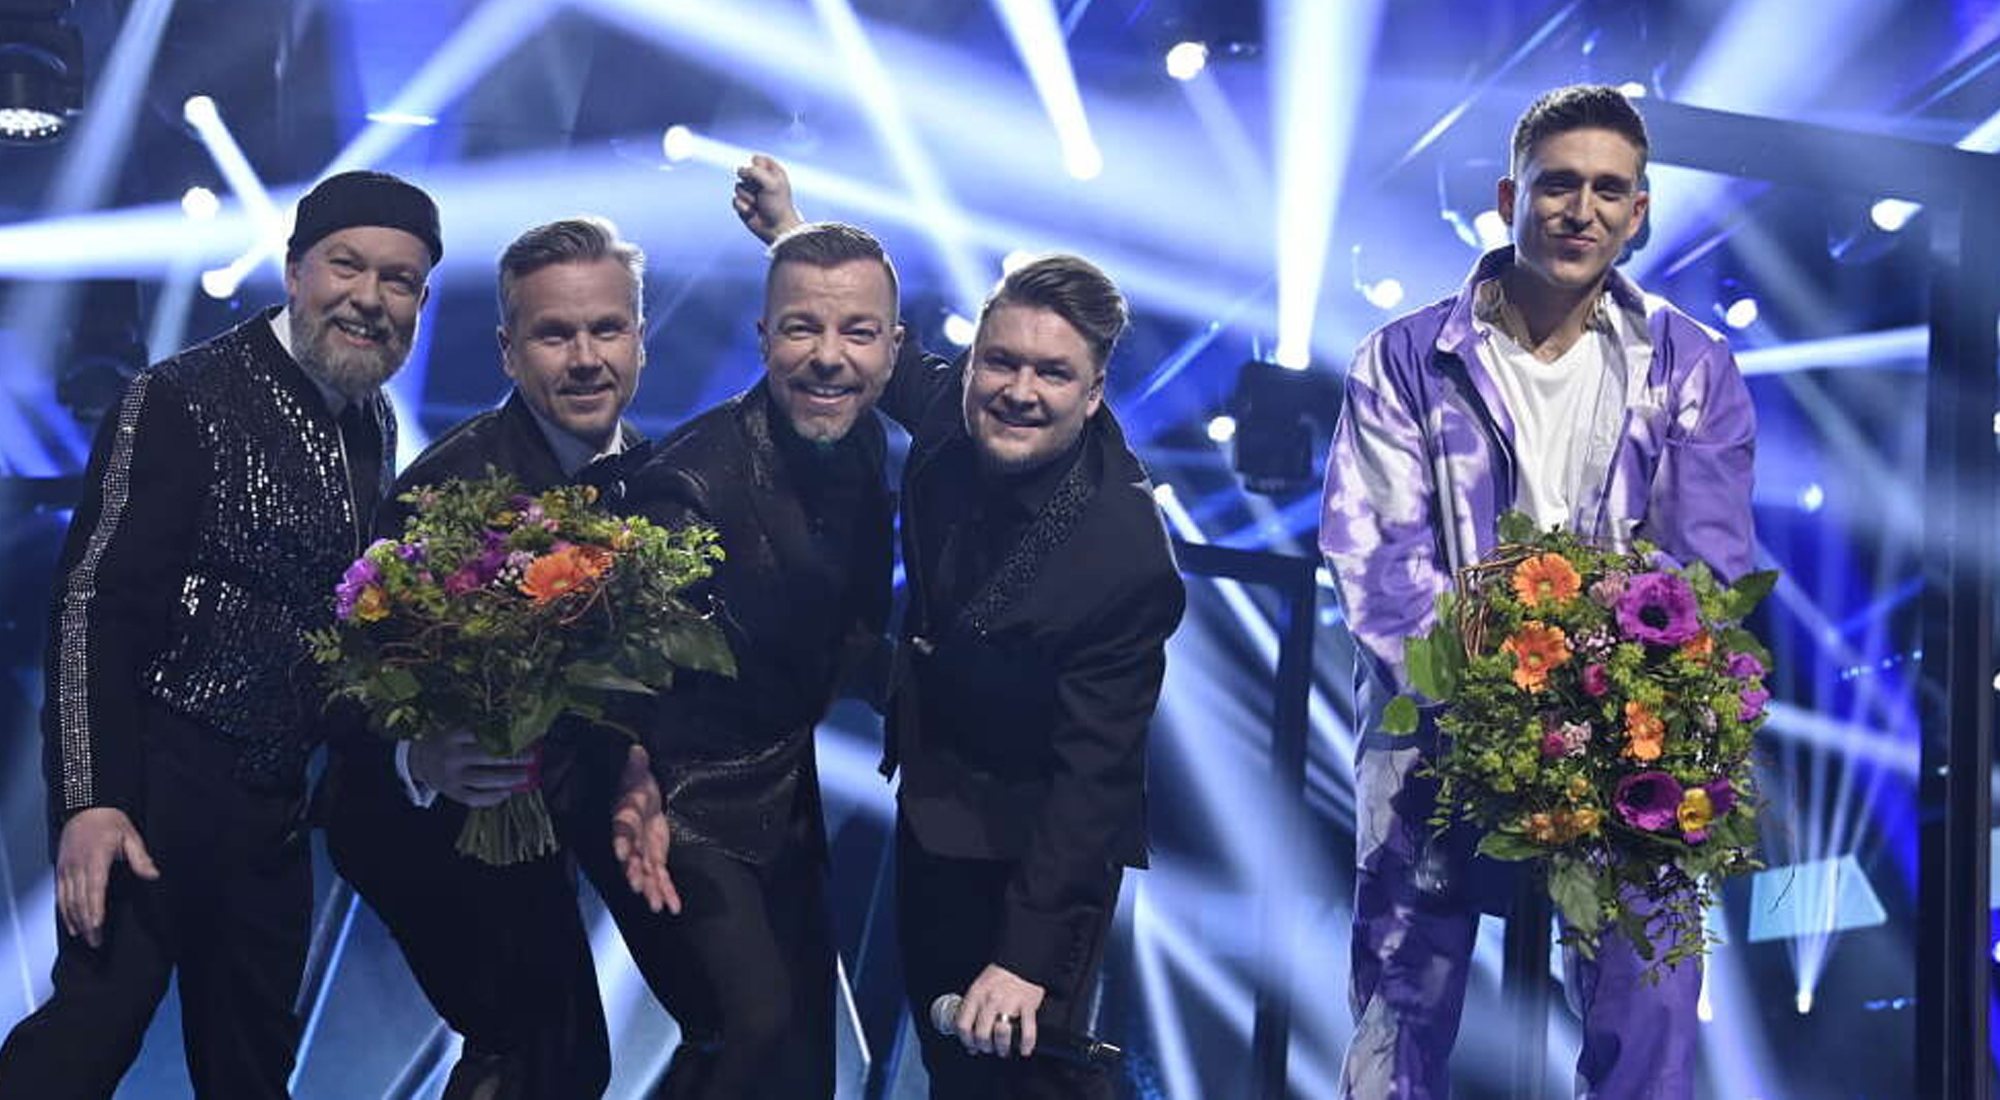 Danny Saucedo y Arvingarna, primeros clasificados del Melodifestivalen 2021